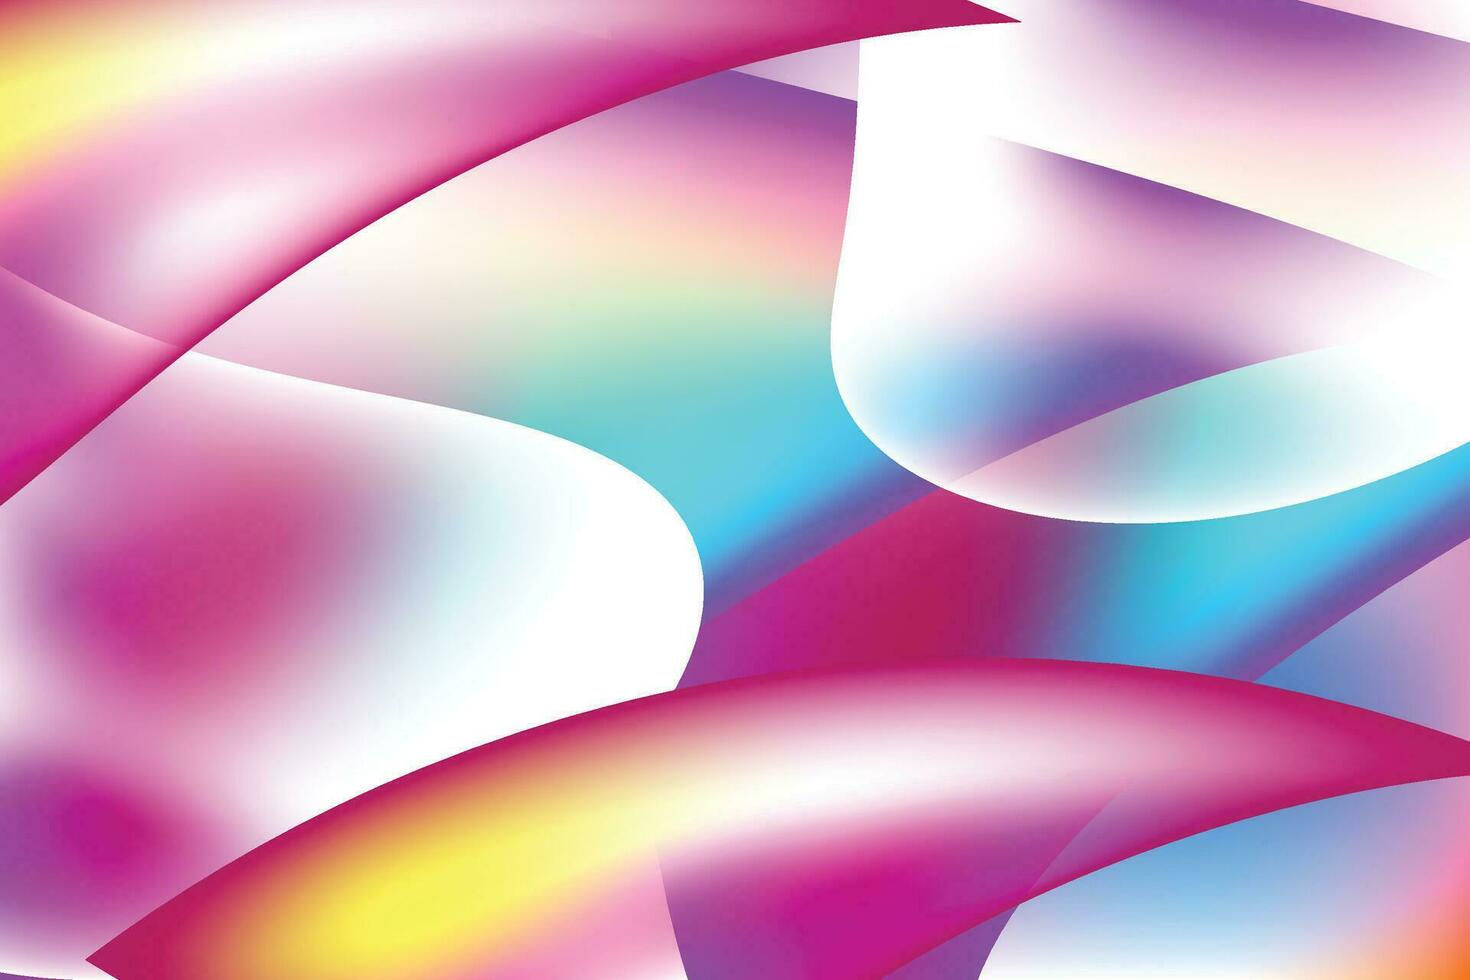 abstrato fundo futurista gradiente roxo azul escuro e rosa com linhas de listras diagonais e ponto brilhante. design de banner moderno e simples. pode usar para apresentação de negócios, pôster, modelo. vetor